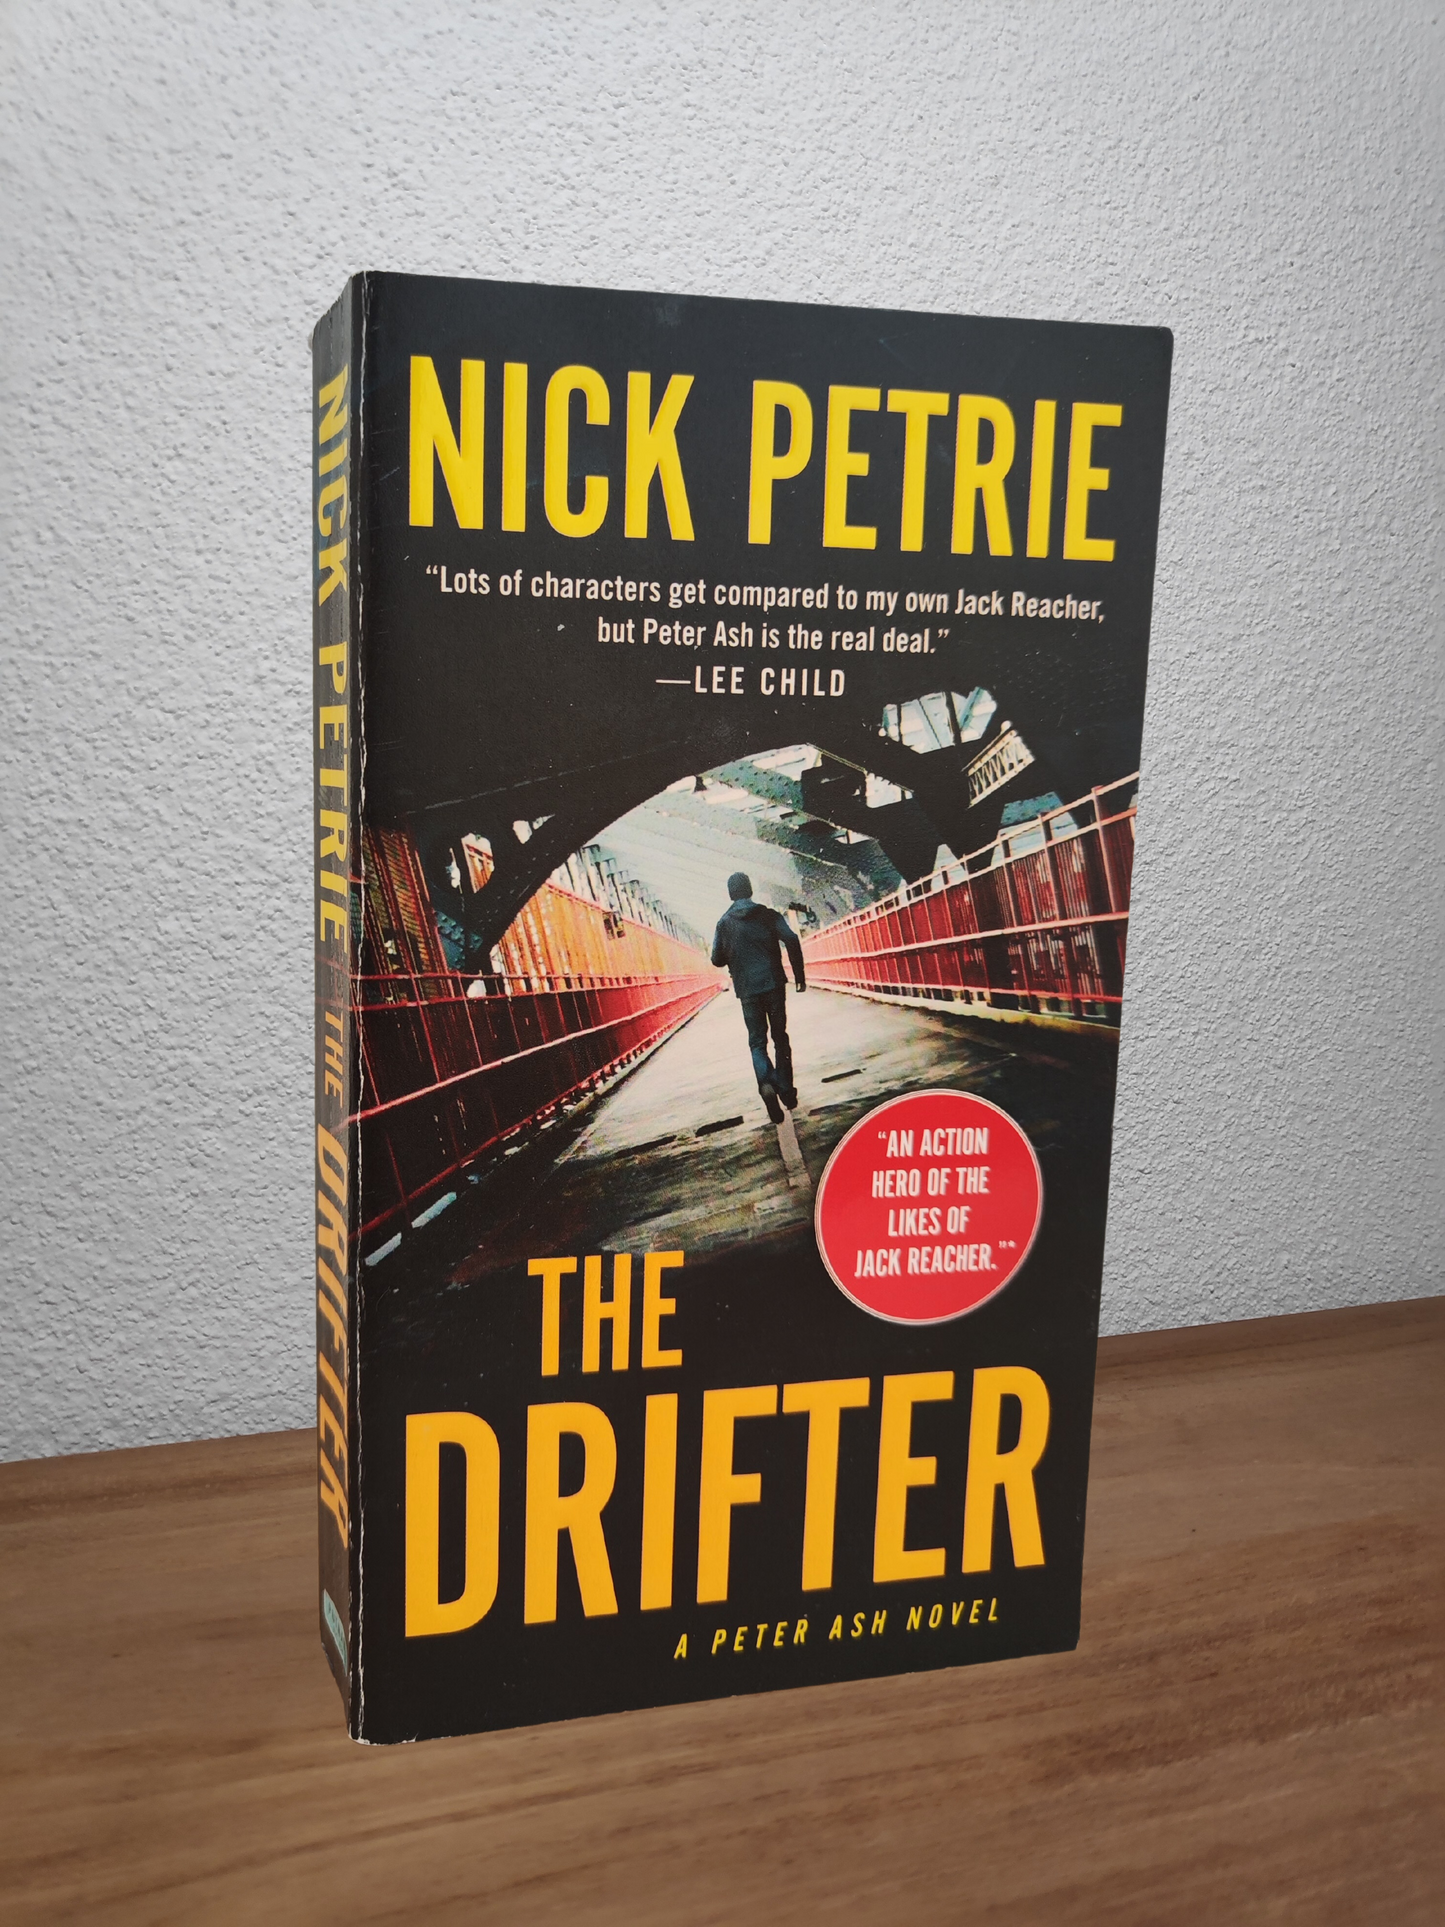 Nick Petrie - The Drifter